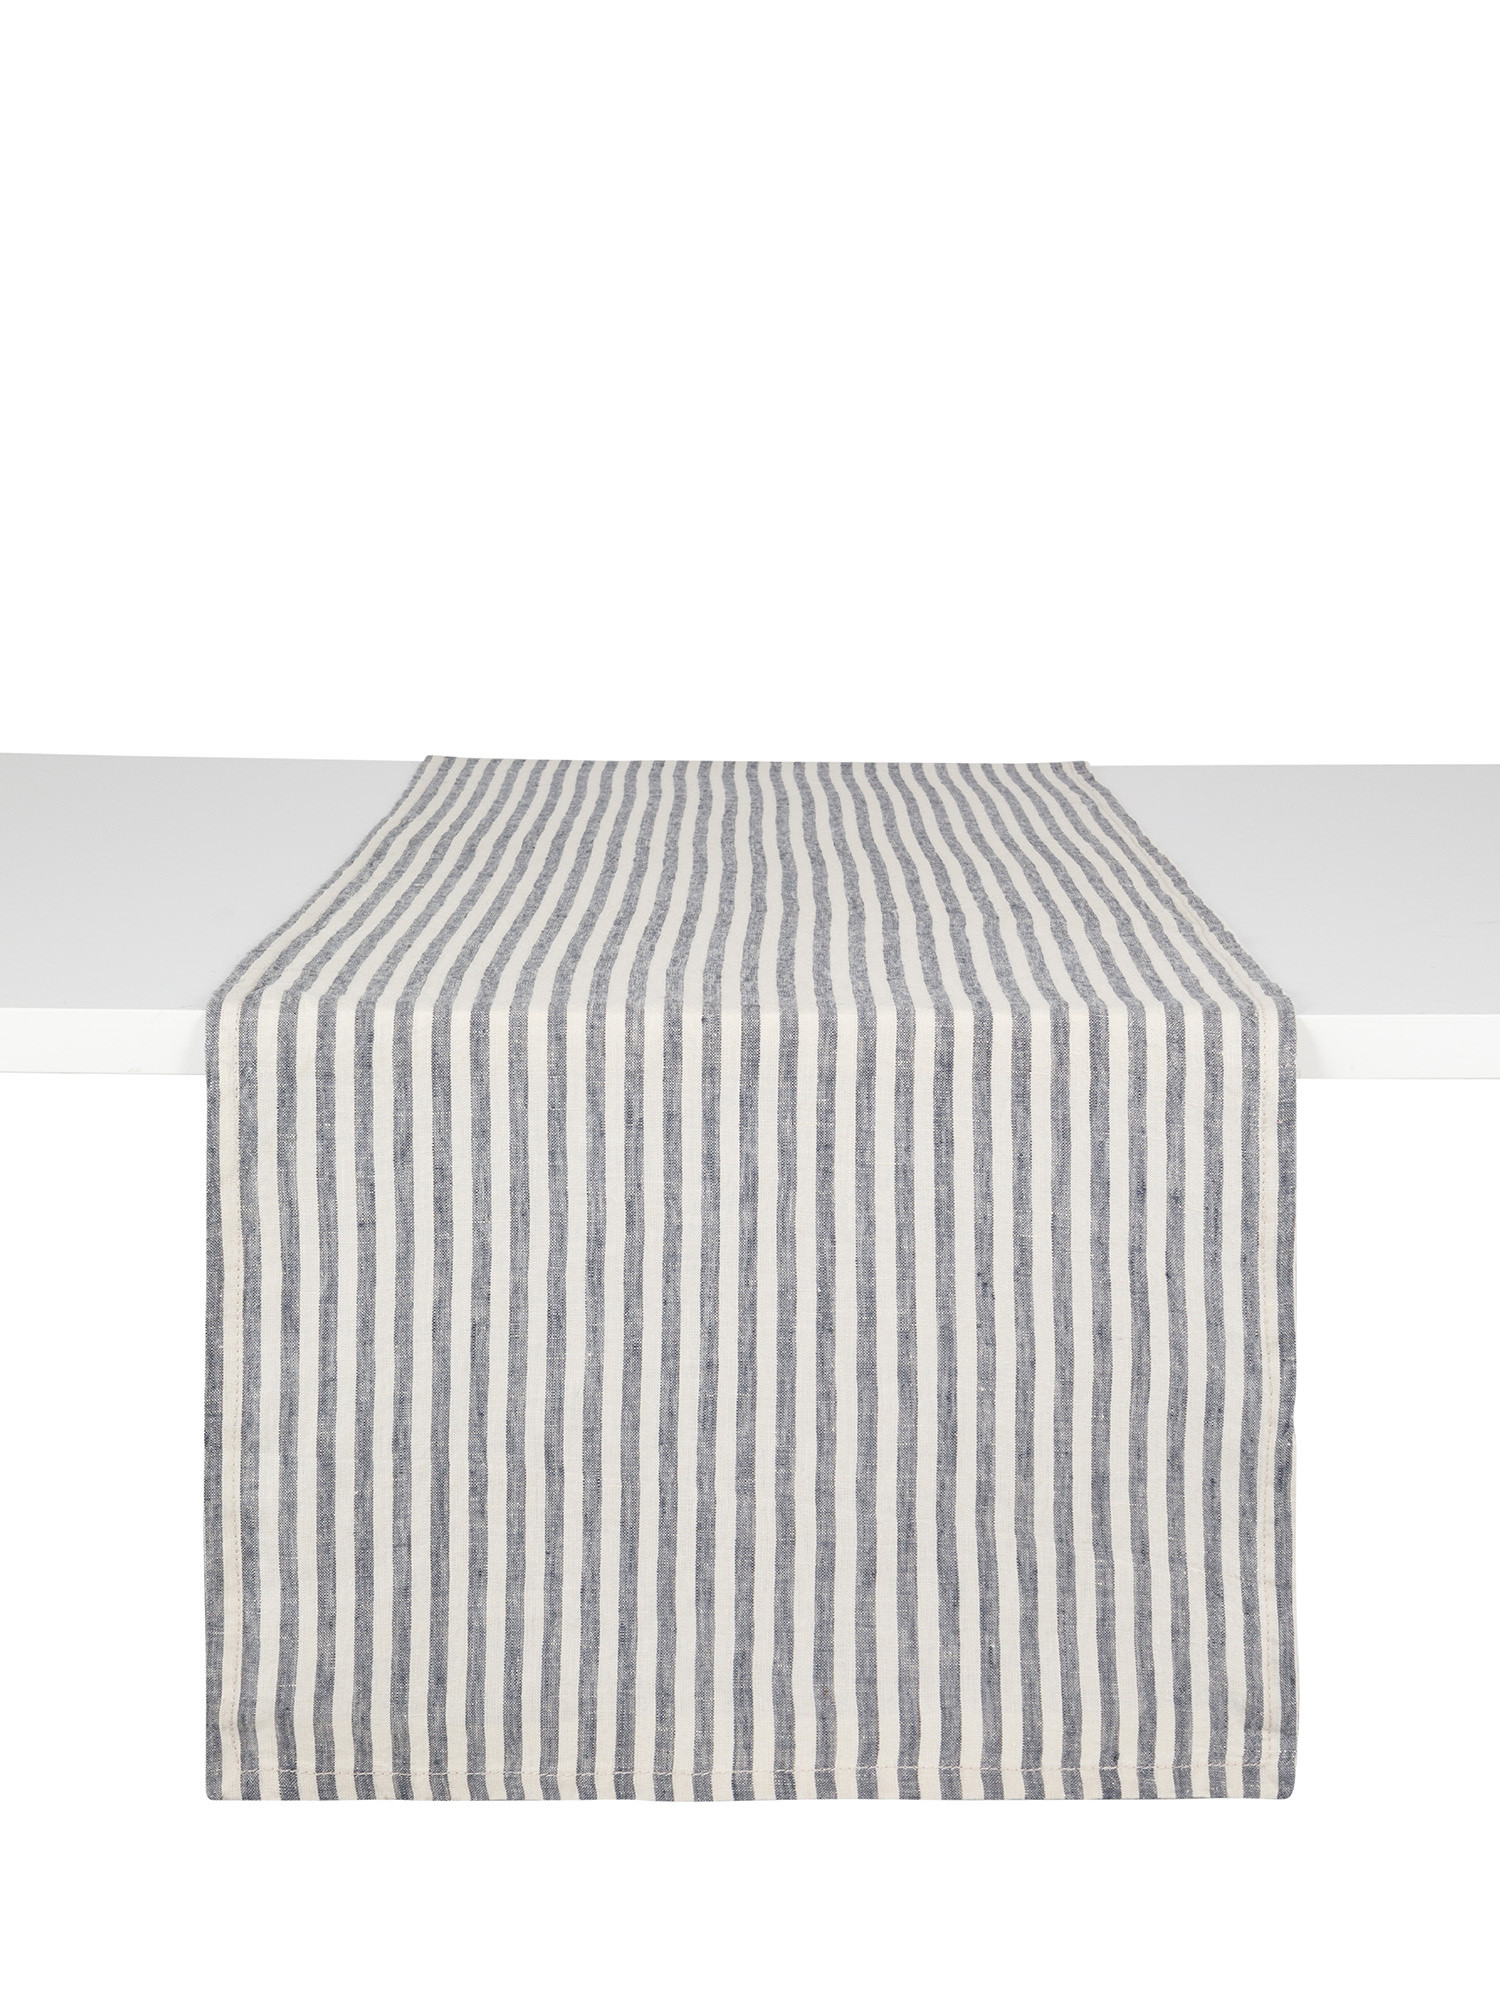 Striped linen runner, Blue, large image number 0